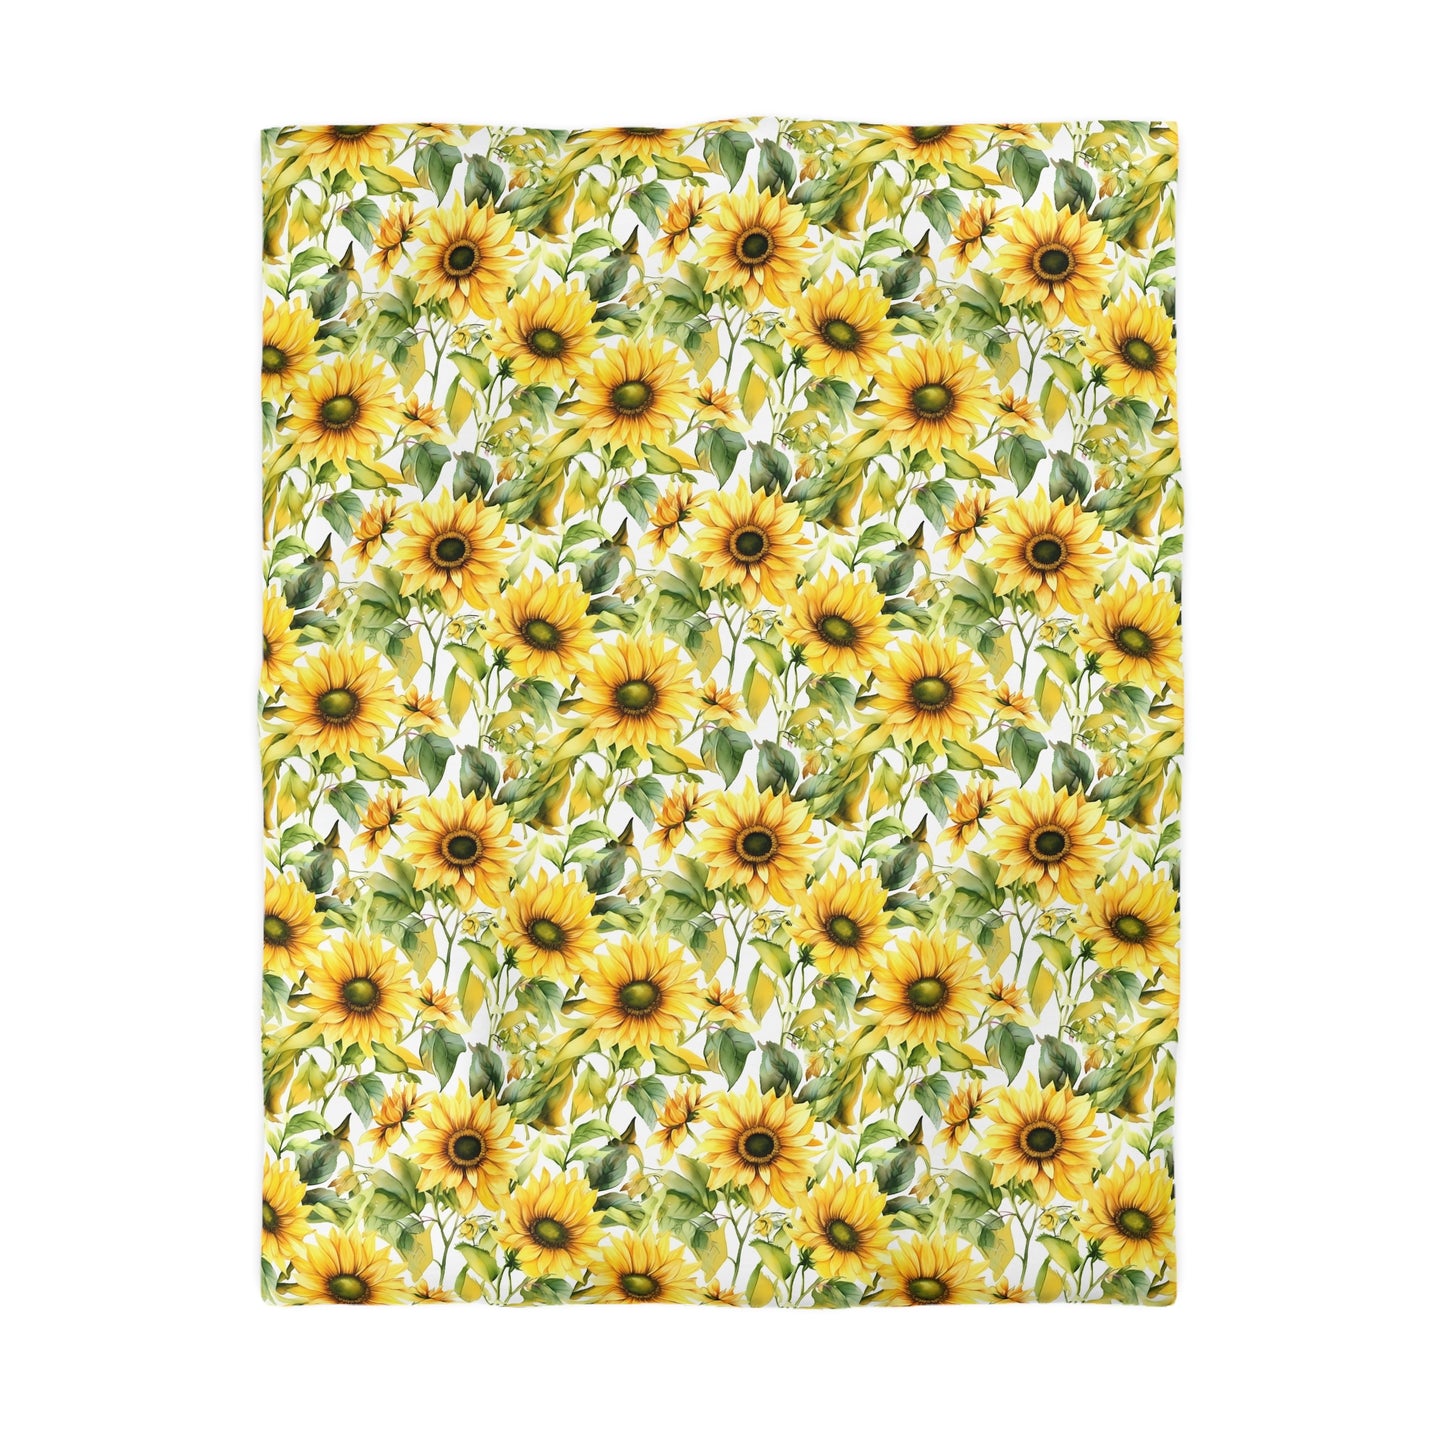 Sunflower Duvet Cover